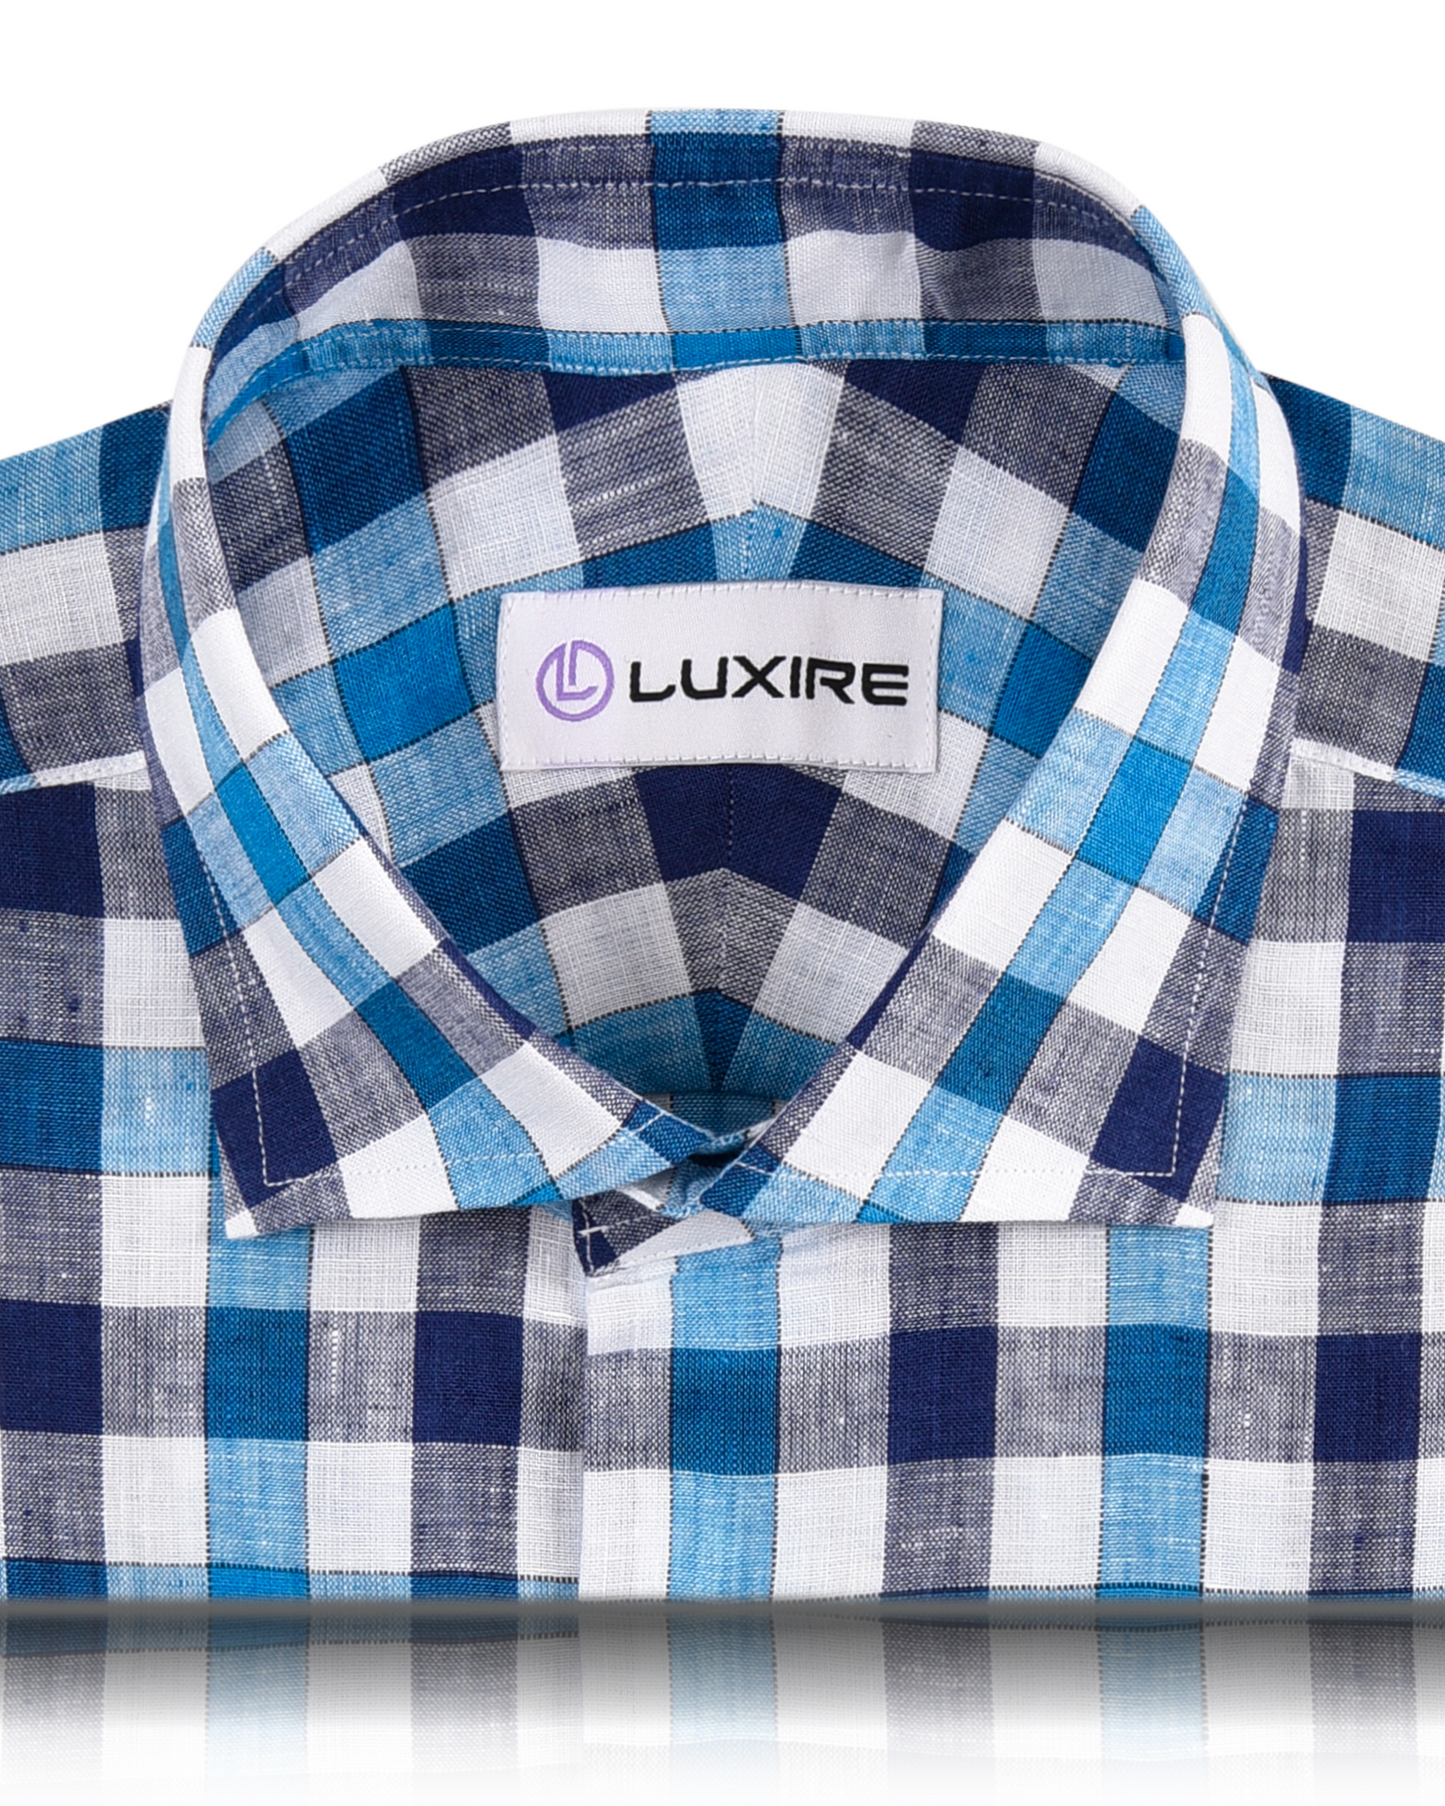 Collar of custom linen shirt for men in white blue navy gingham